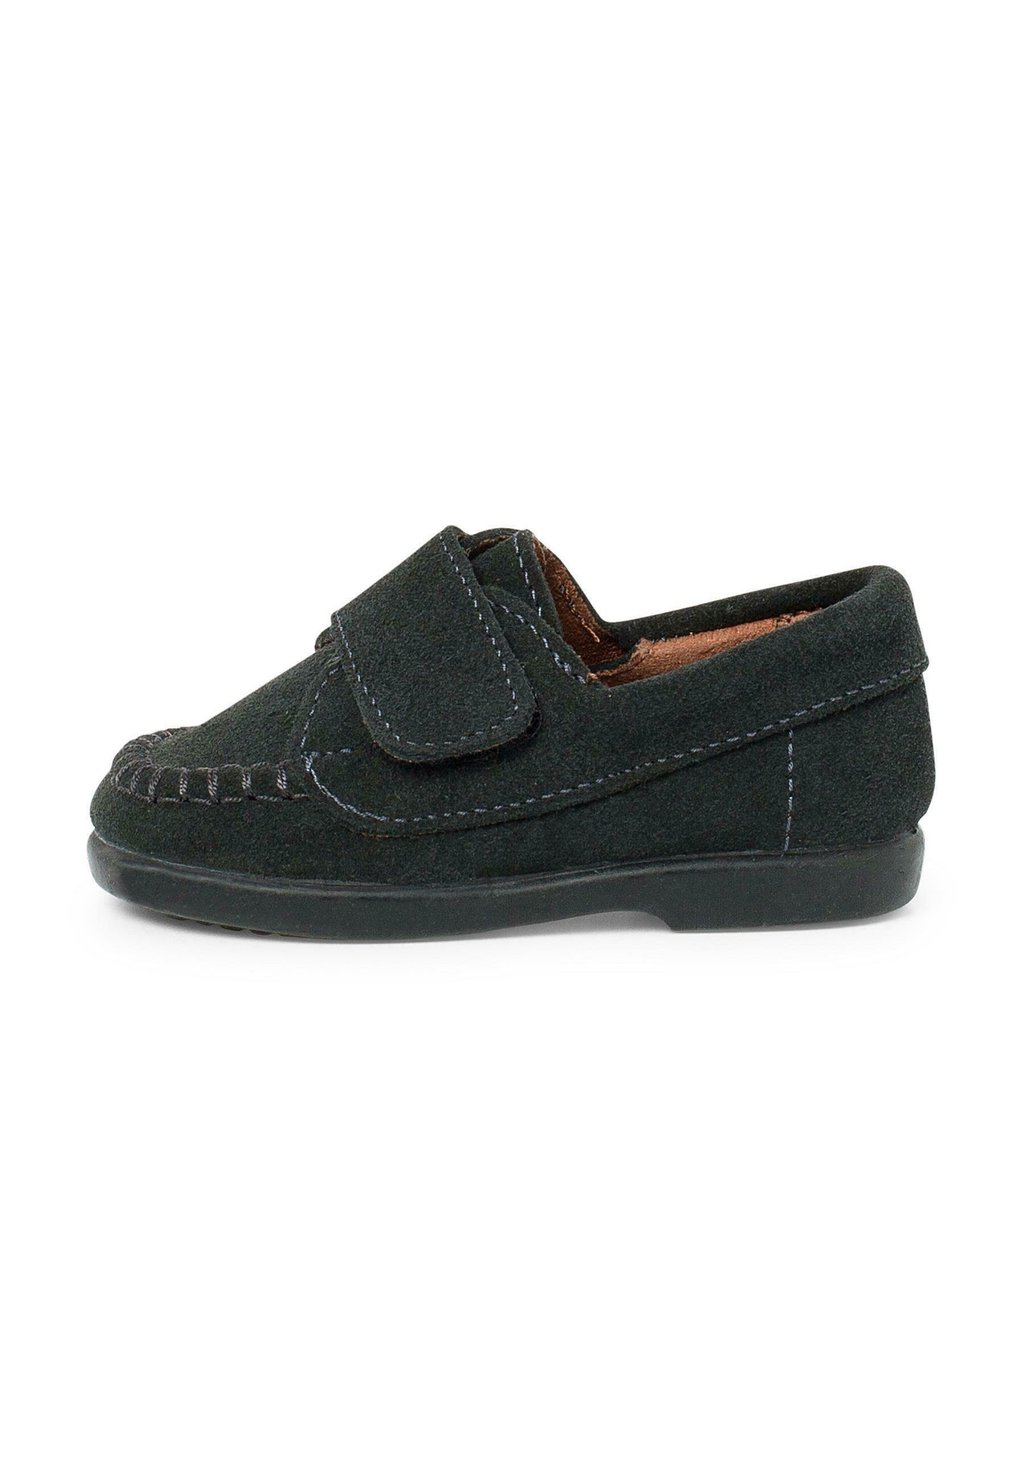 Обувь для обучения TIRA ADHERENTE Pisamonas, цвет gris